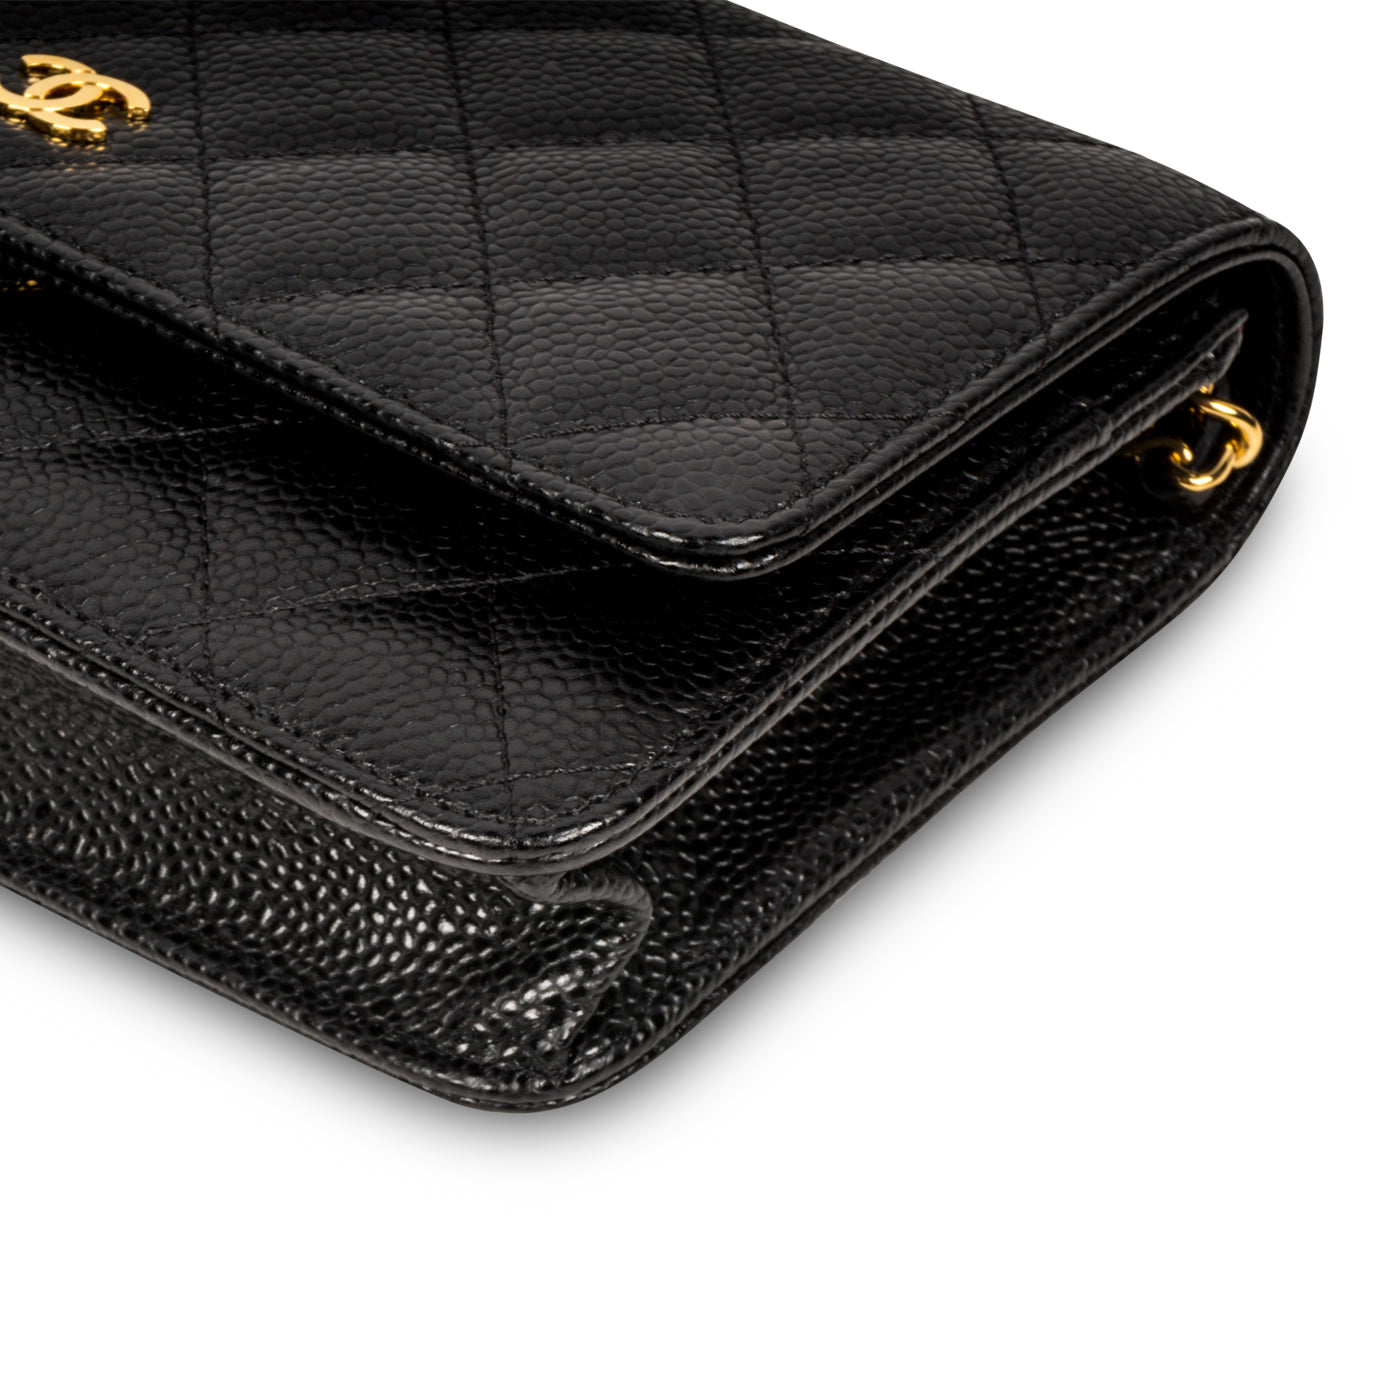 Chanel Wallet on Chain Woc in Black Caviar GHW | Dearluxe